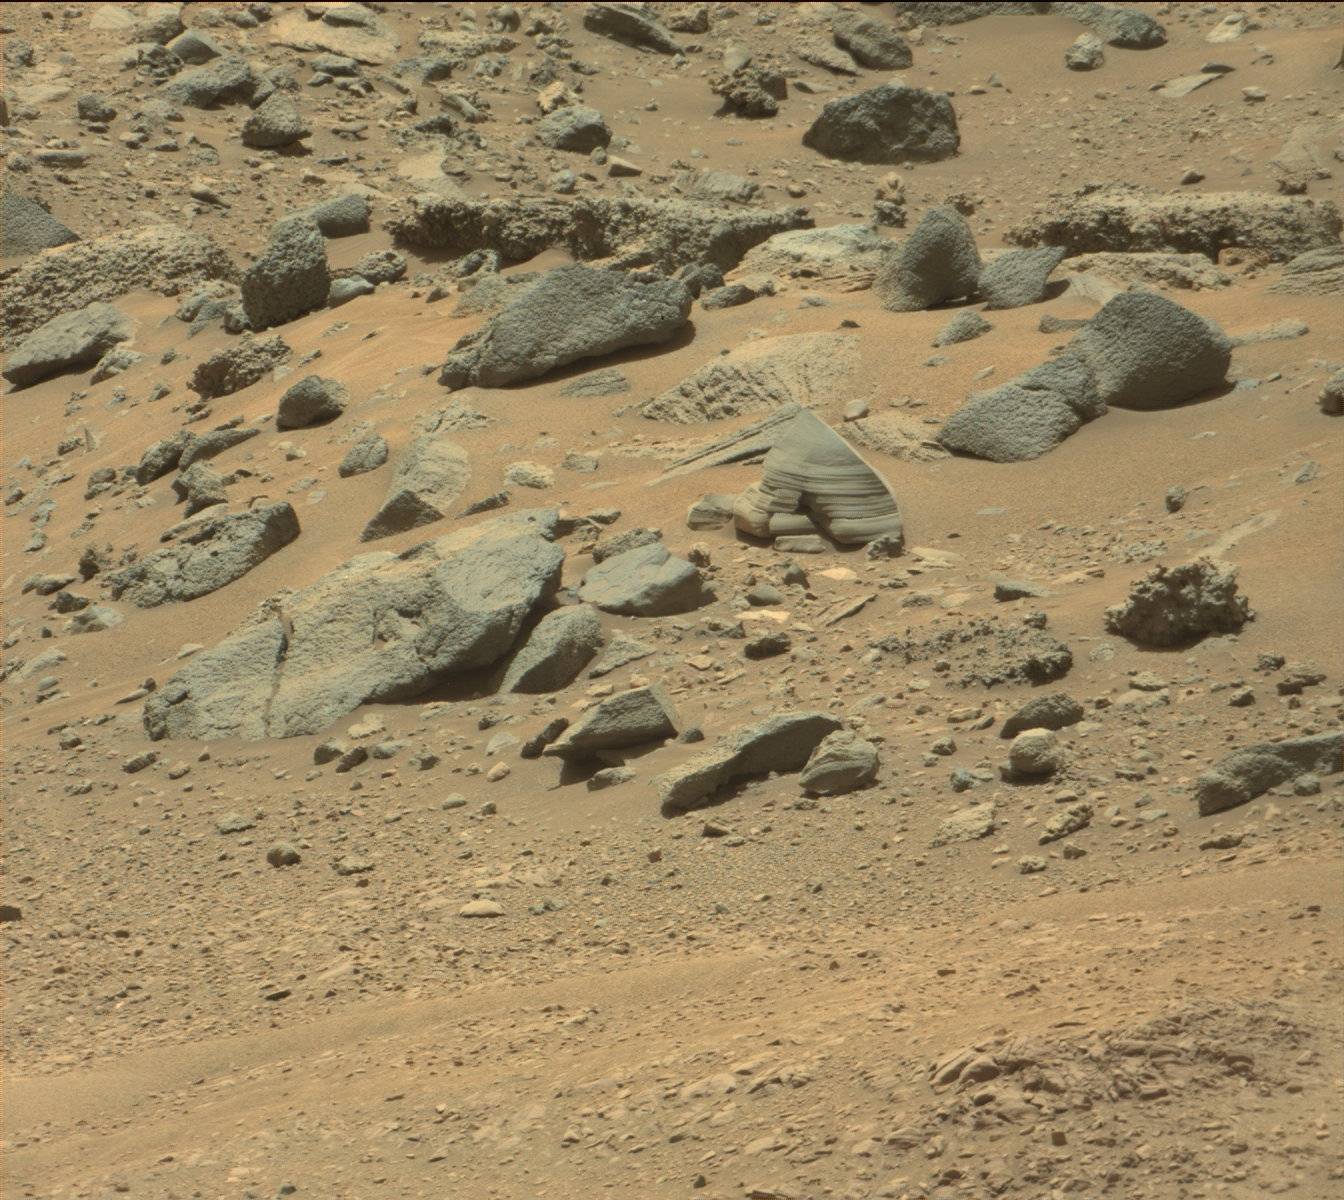 Mars Bilder Hochauflösend